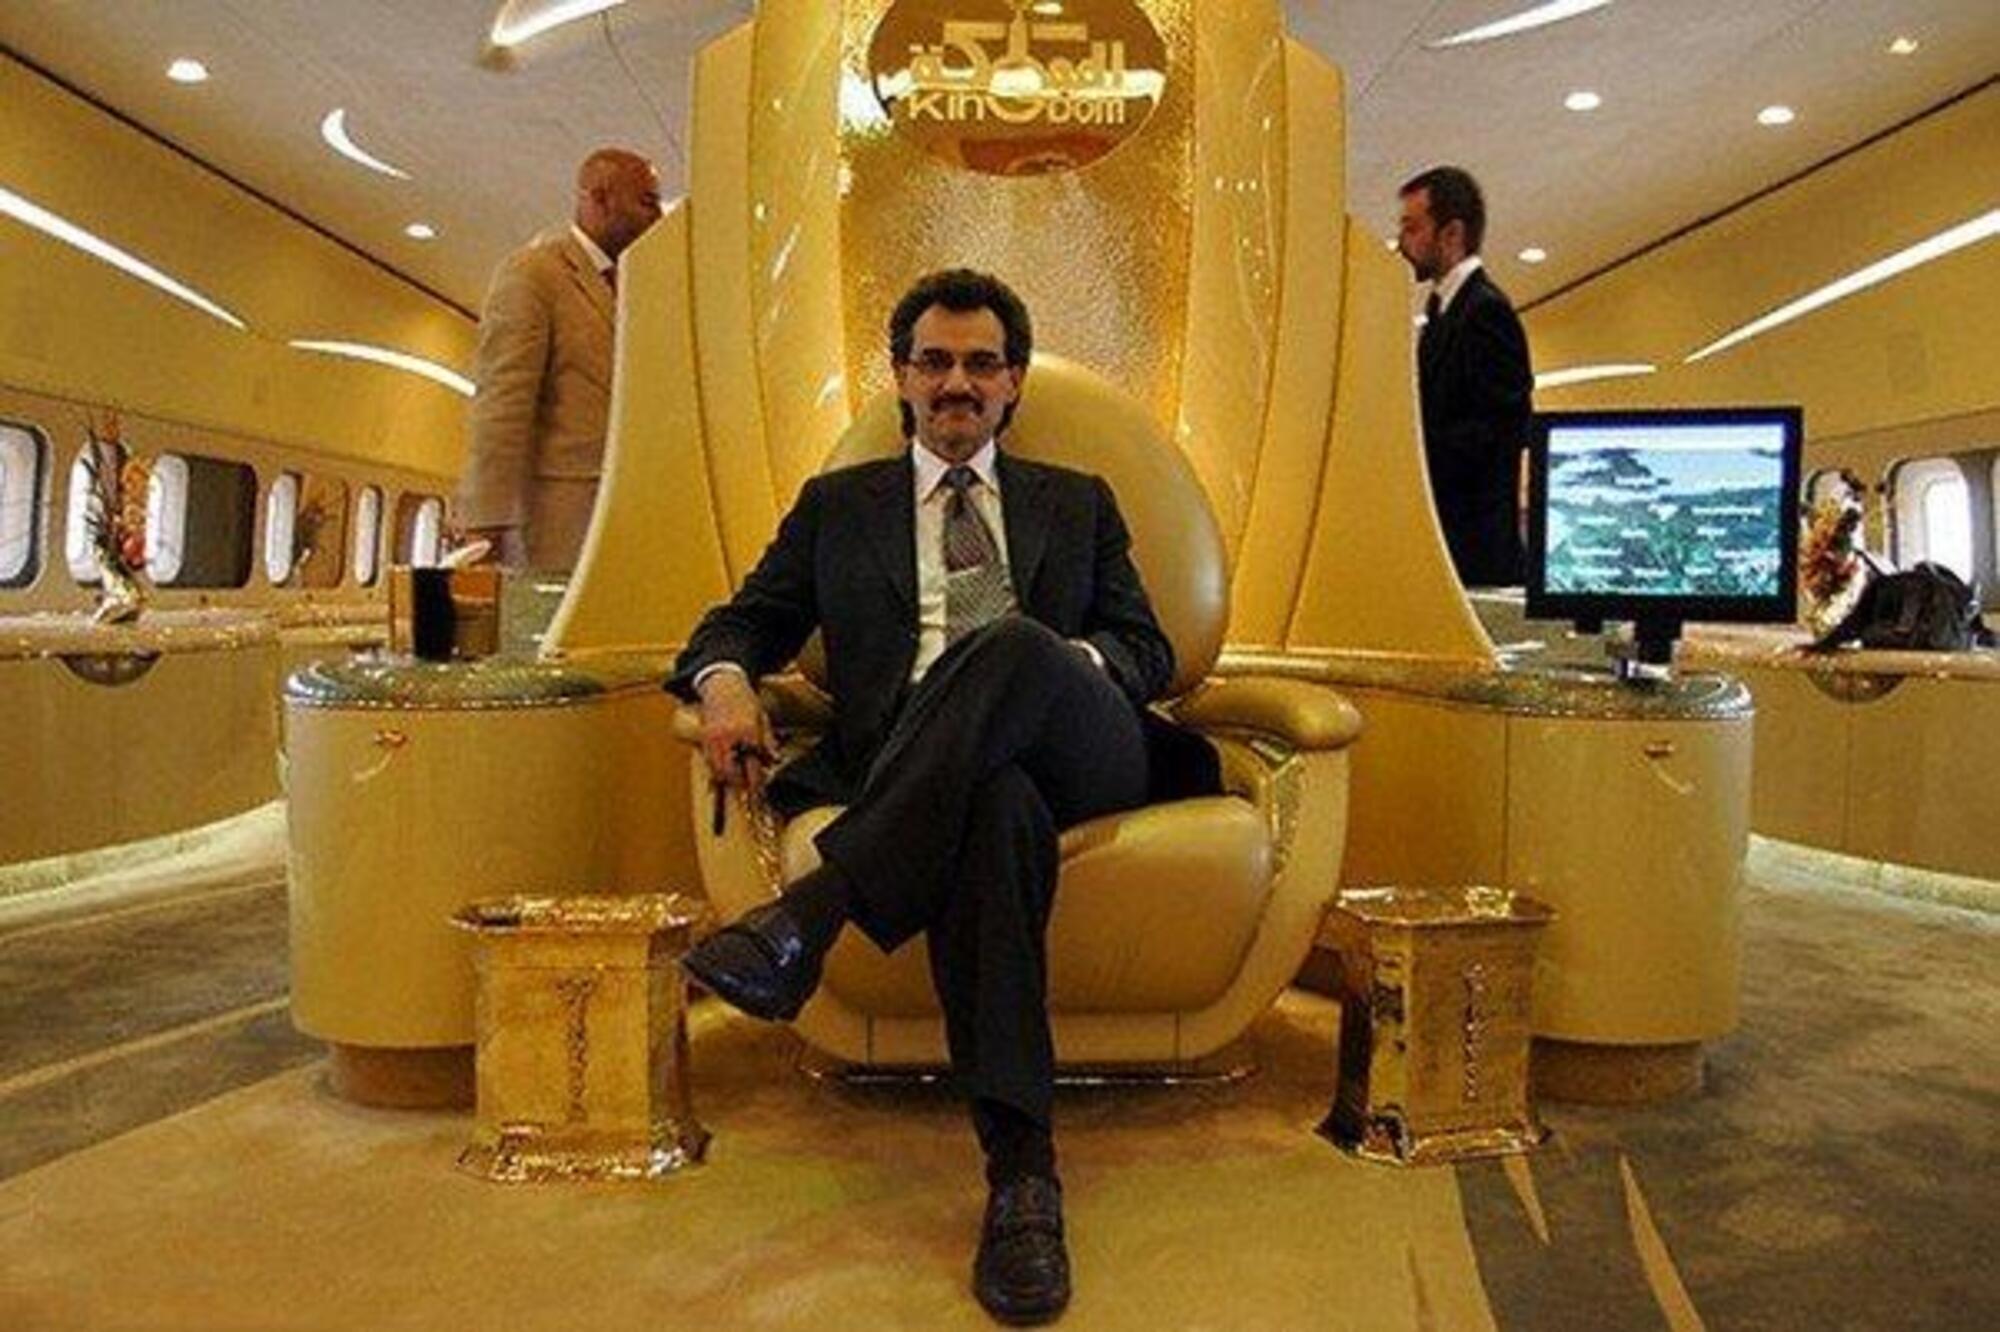 20221102 112349286 9573Il principe saudita Alwaleed Bin Talal nel suo A380